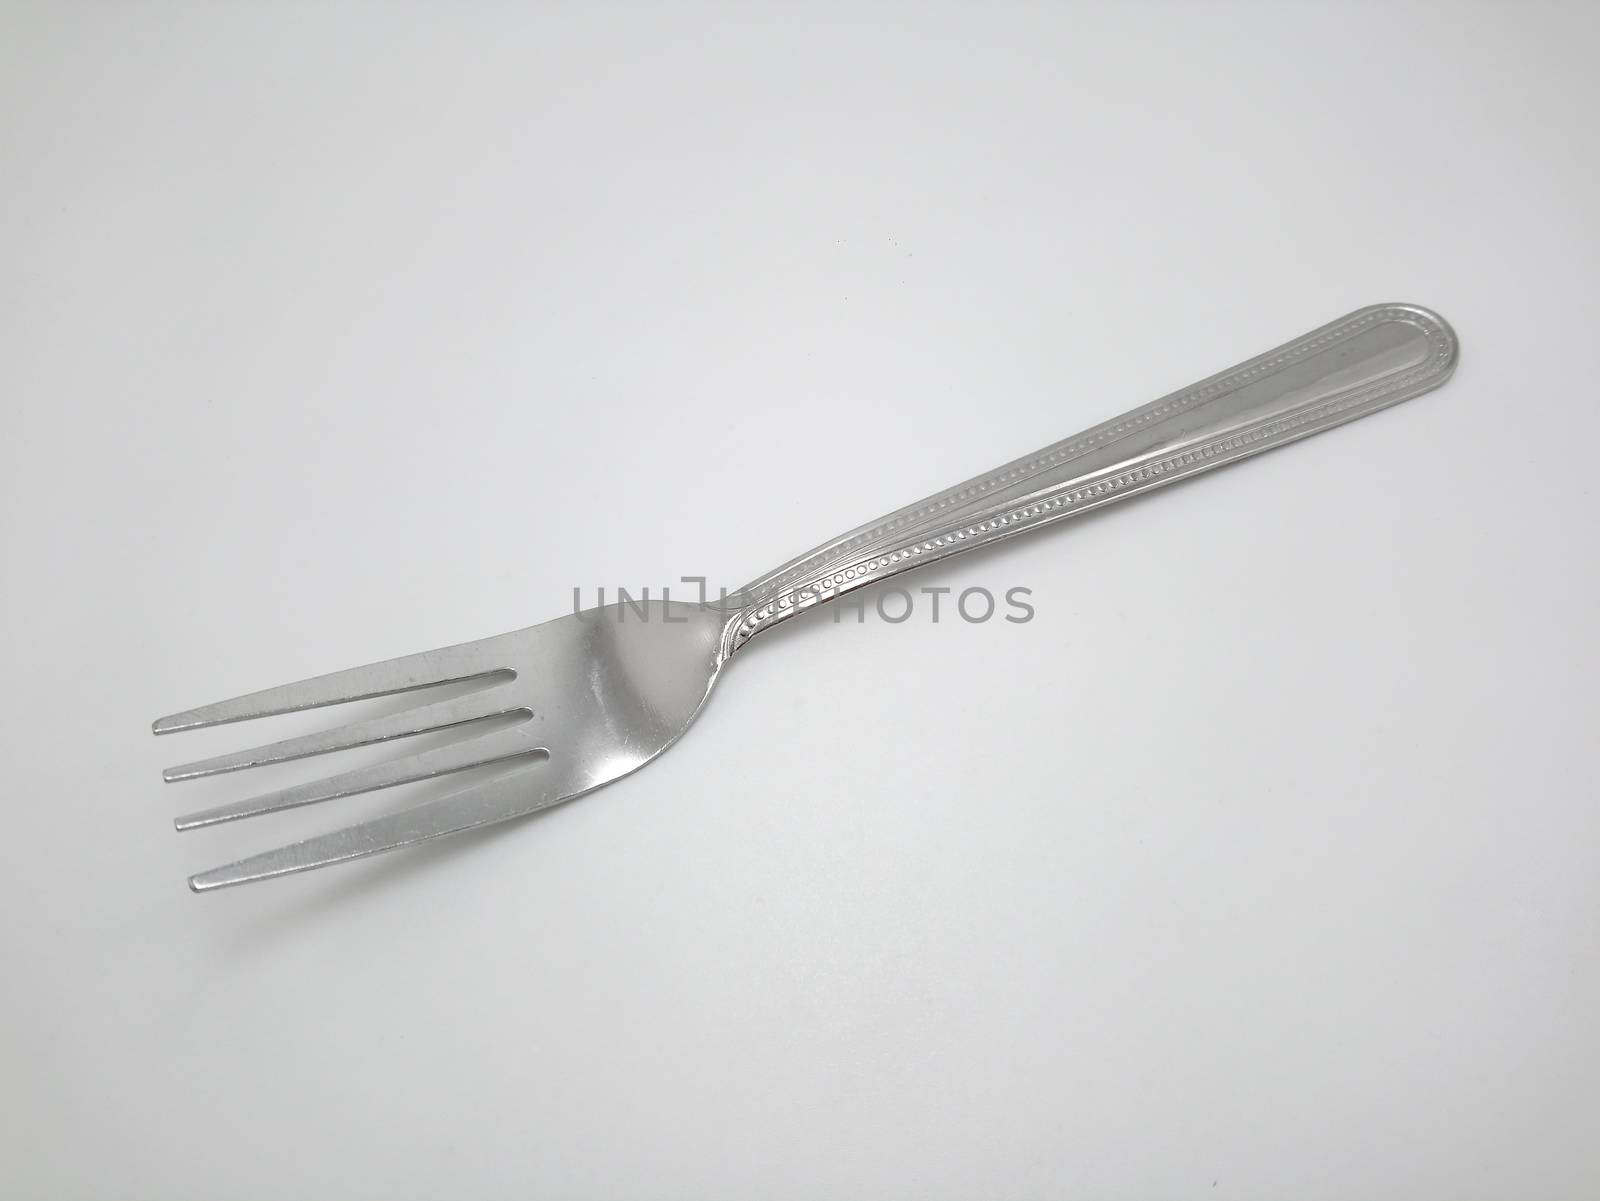 Stainless steel metal eating utensil fork by imwaltersy